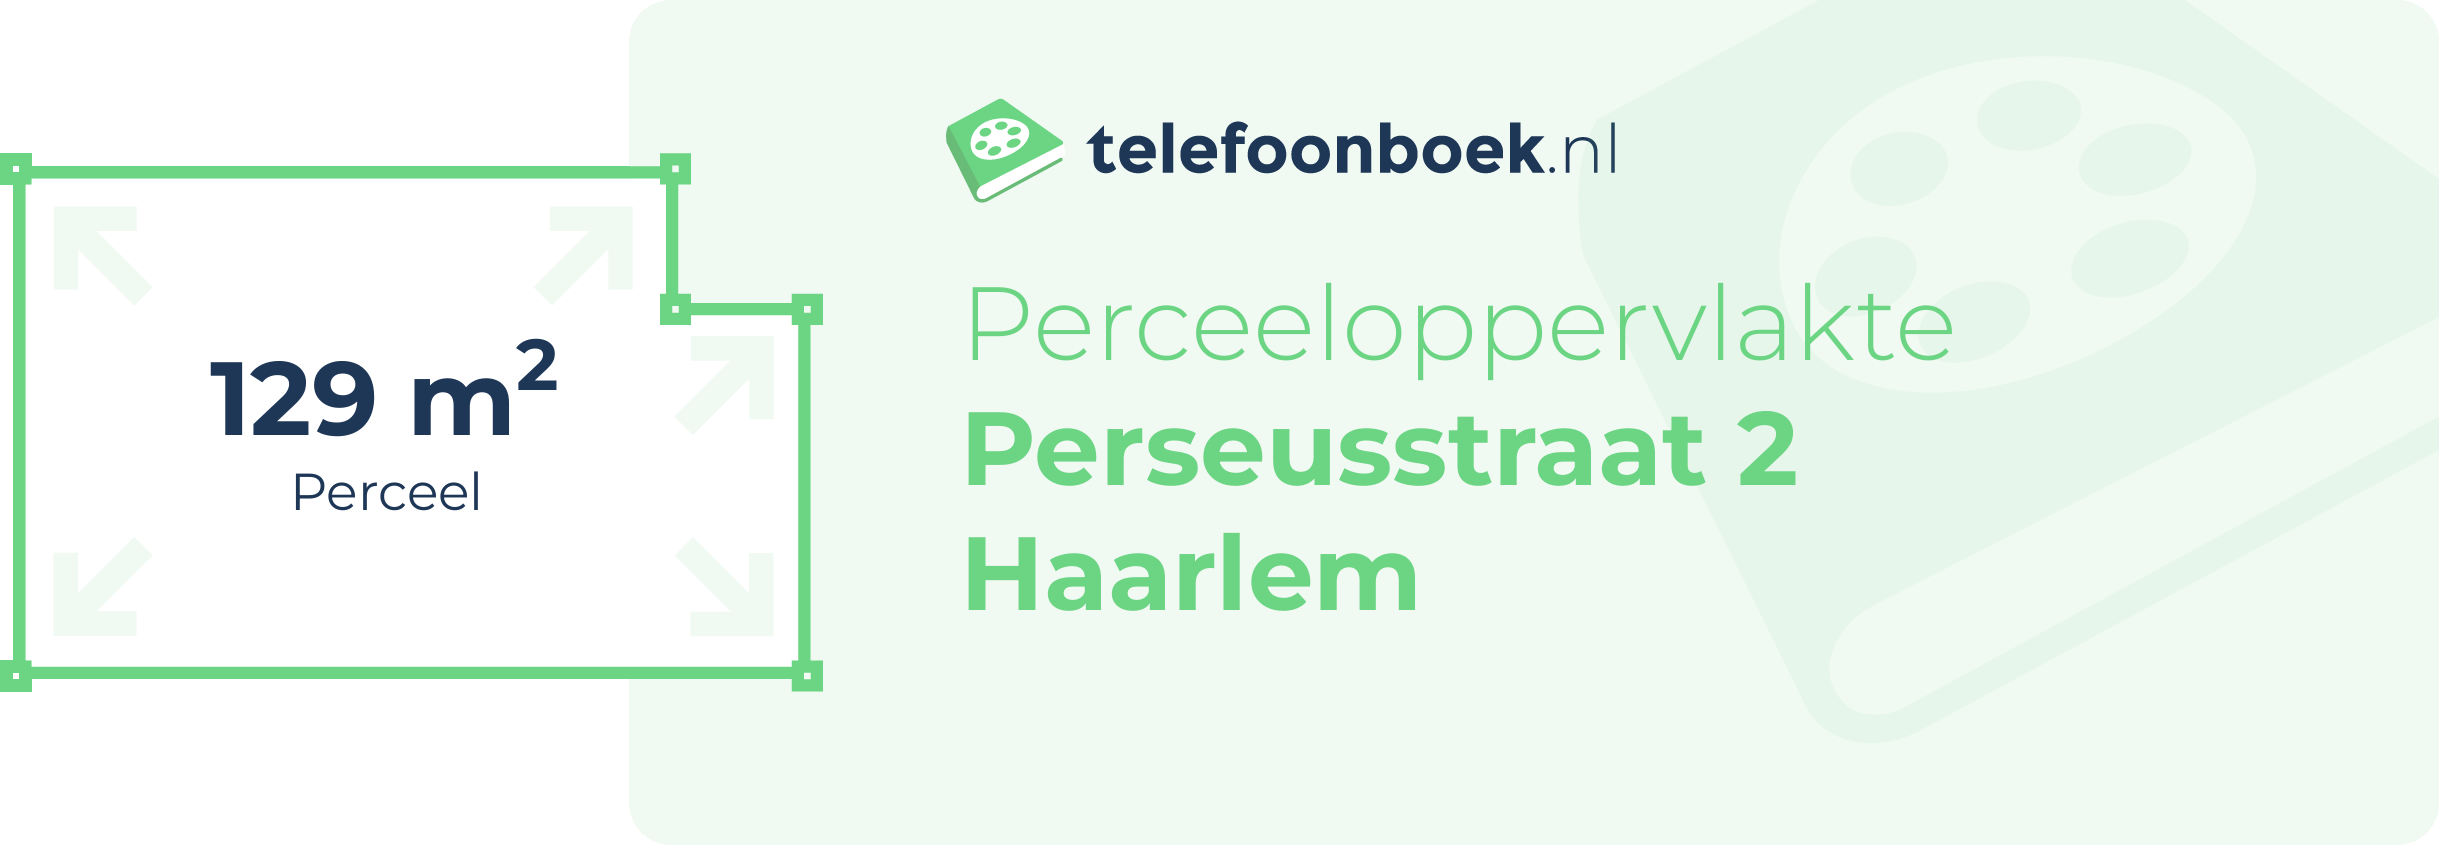 Perceeloppervlakte Perseusstraat 2 Haarlem